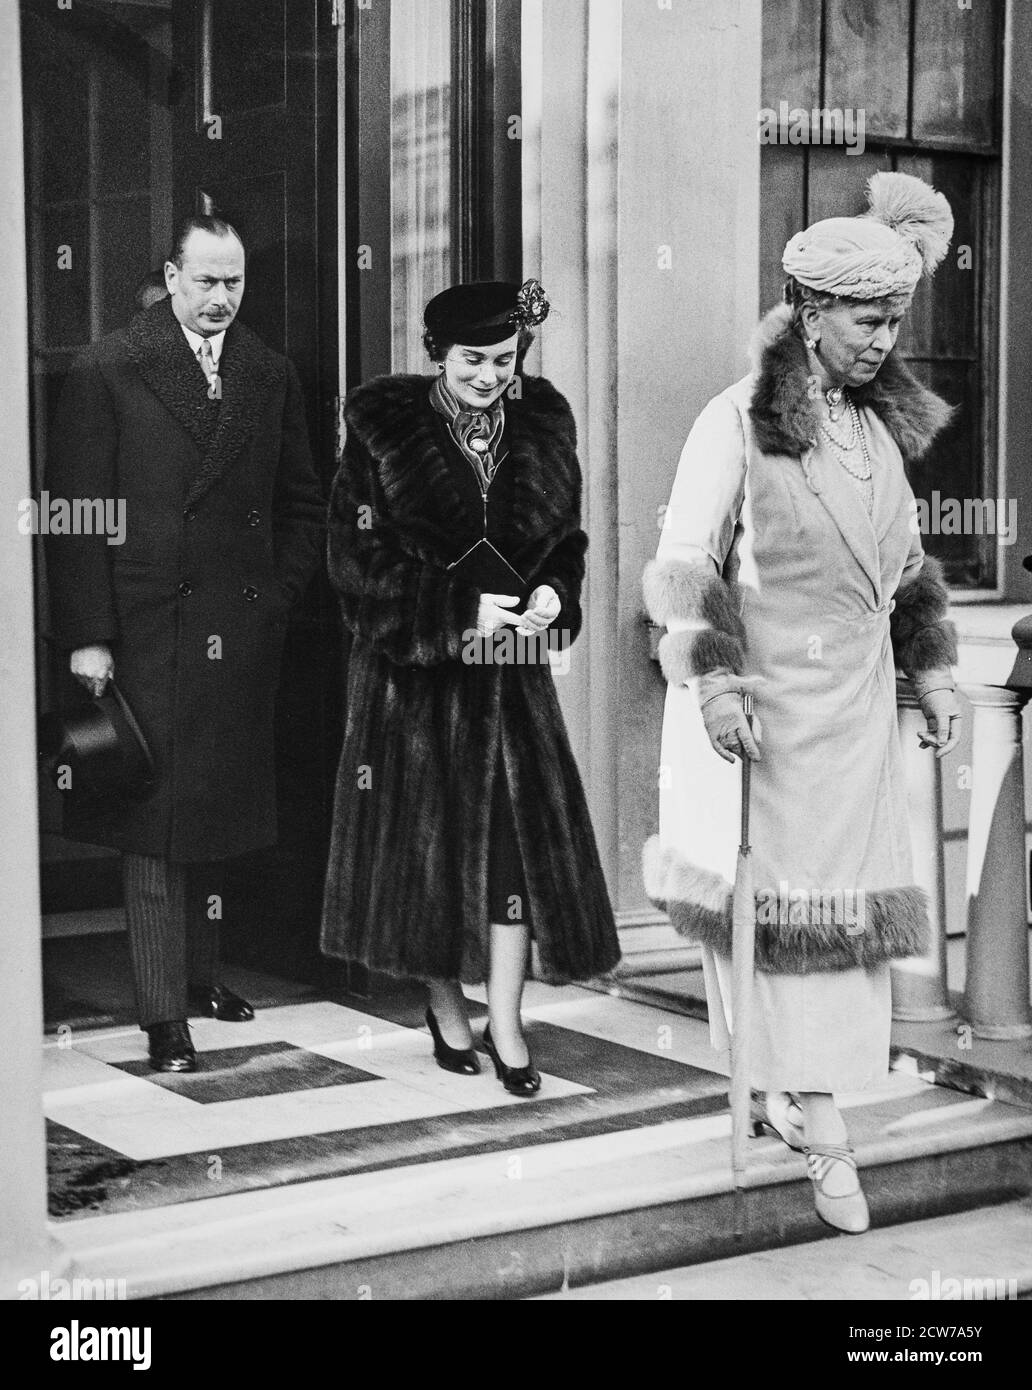 LONDRES - 9 FÉVRIER : le duc de Gloucester, la duchesse de Gloucester et la reine Mary, saluant le 3 Belgrave Square, pour aller au baptême de la princesse Alexandra au palais de Buckingham, le 9 février 1937. Banque D'Images